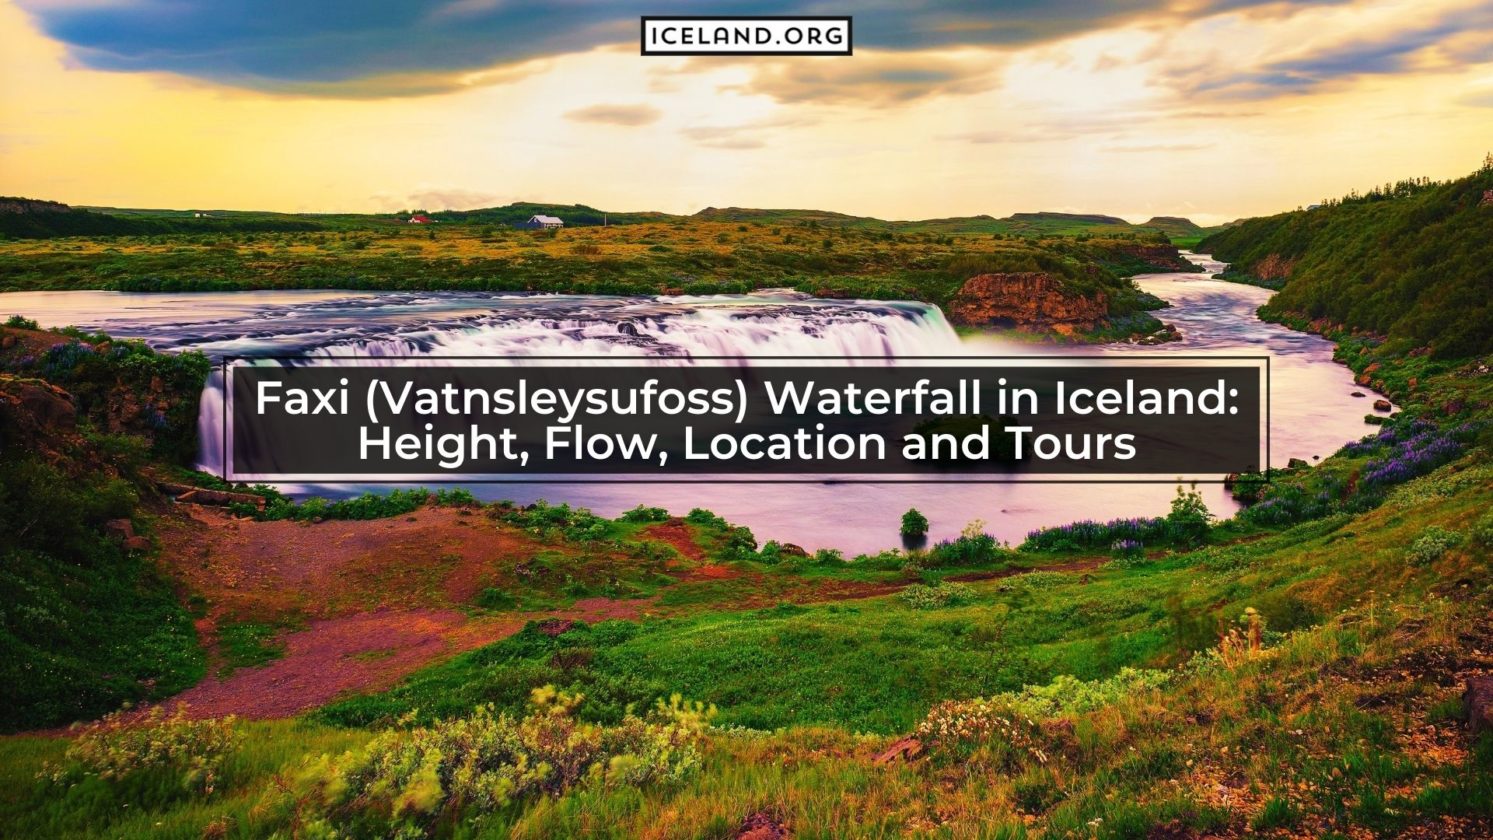 Faxi (Vatnsleysufoss) Waterfall in Iceland